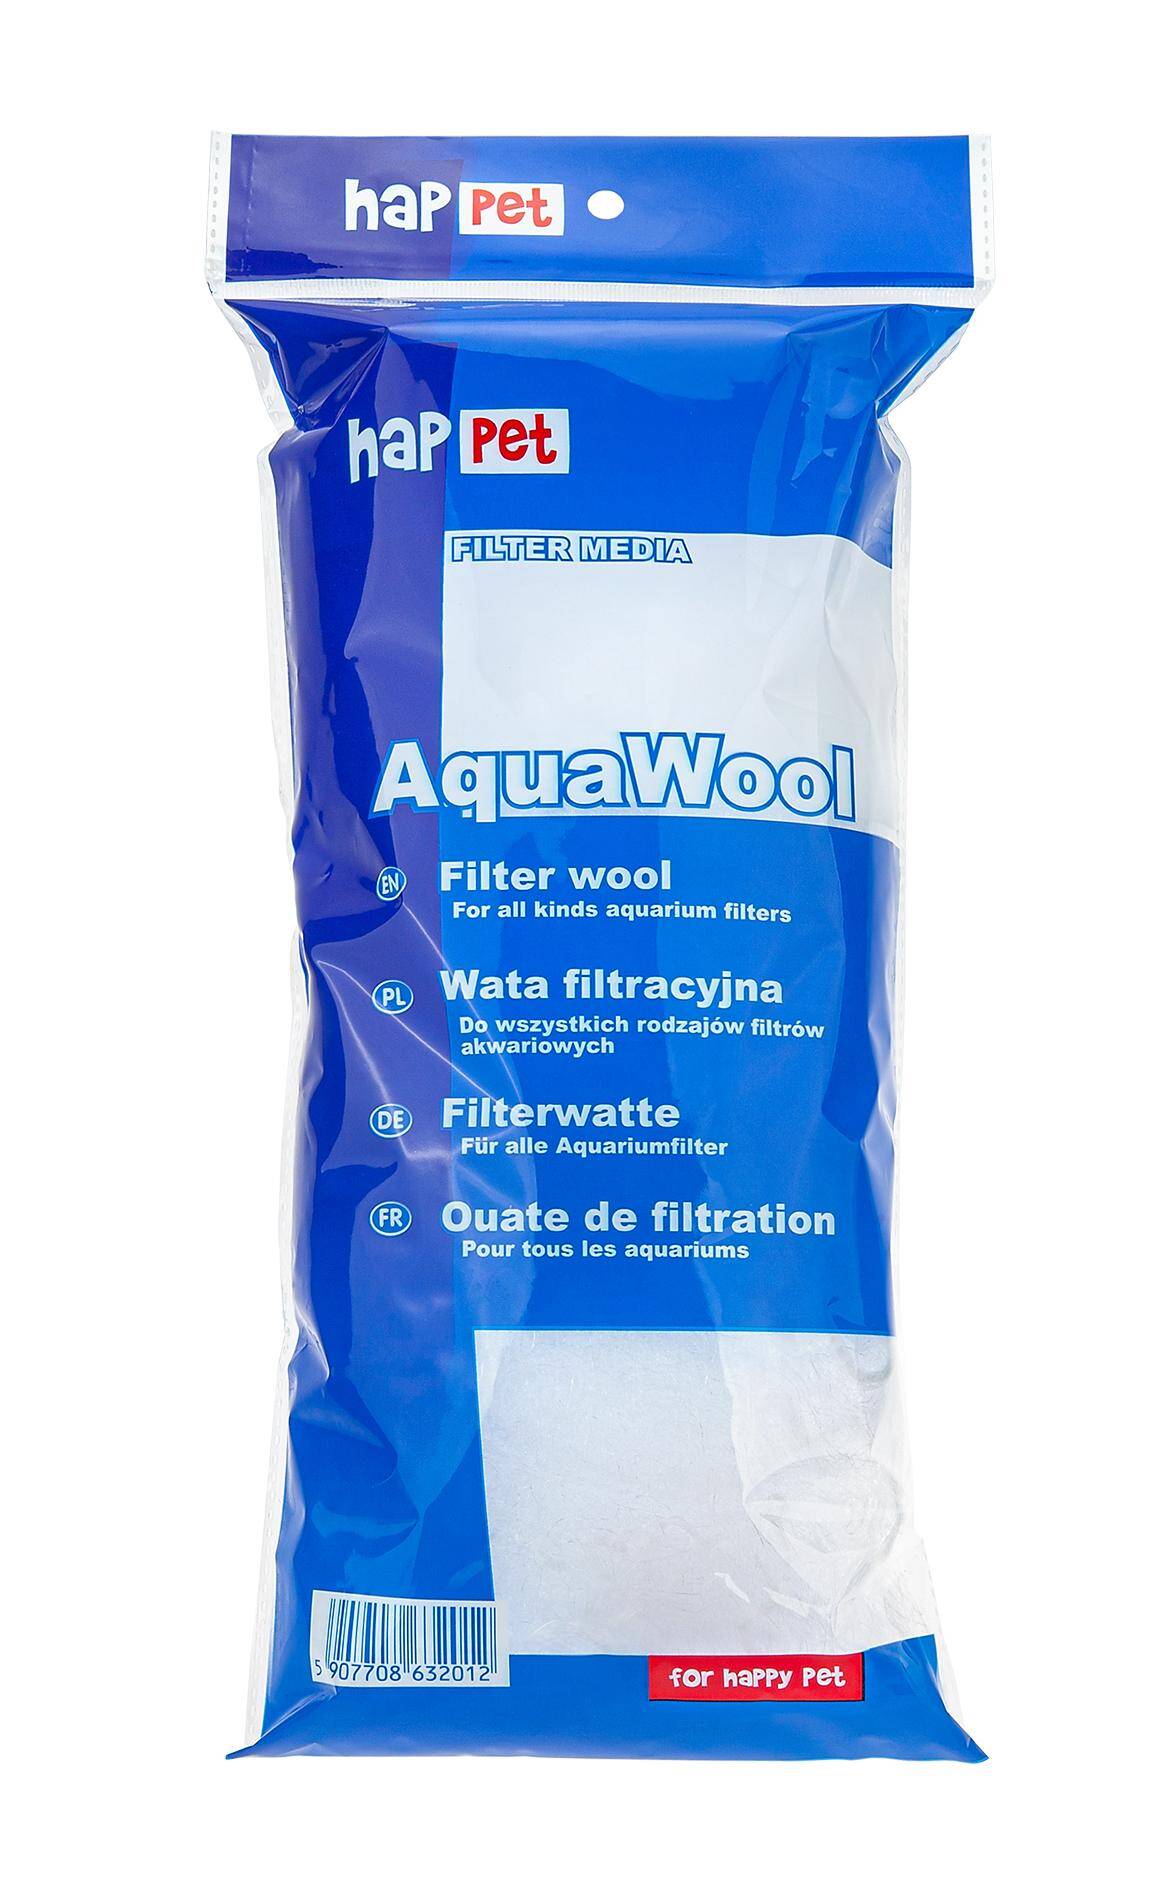 Filter wool - Aqua Wool